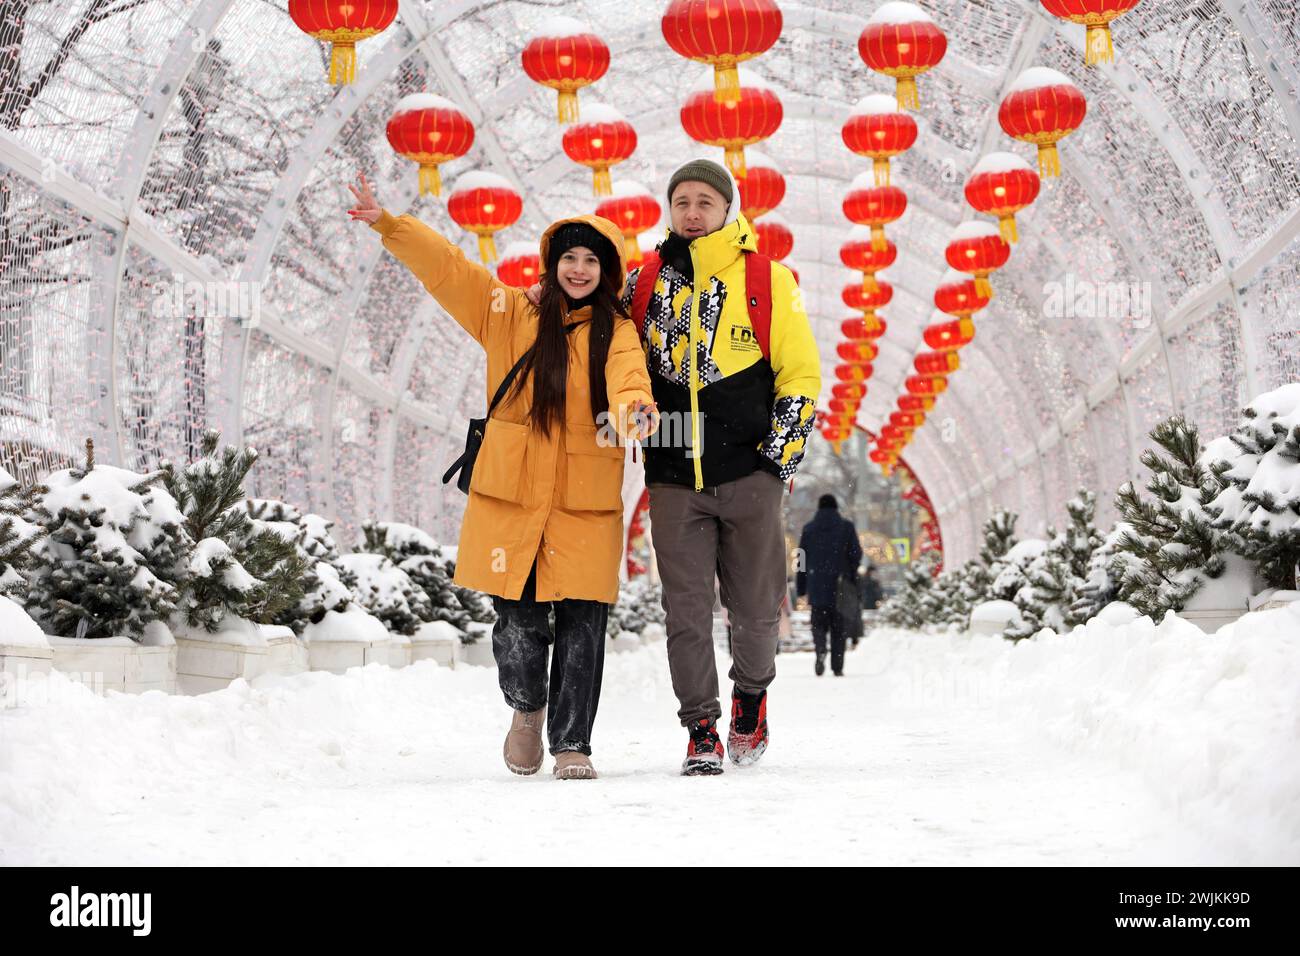 Coppia di sposi felici che cammina sullo sfondo delle decorazioni del capodanno cinese. Vicolo festivo decorato con lanterne di carta rossa nella città invernale Foto Stock